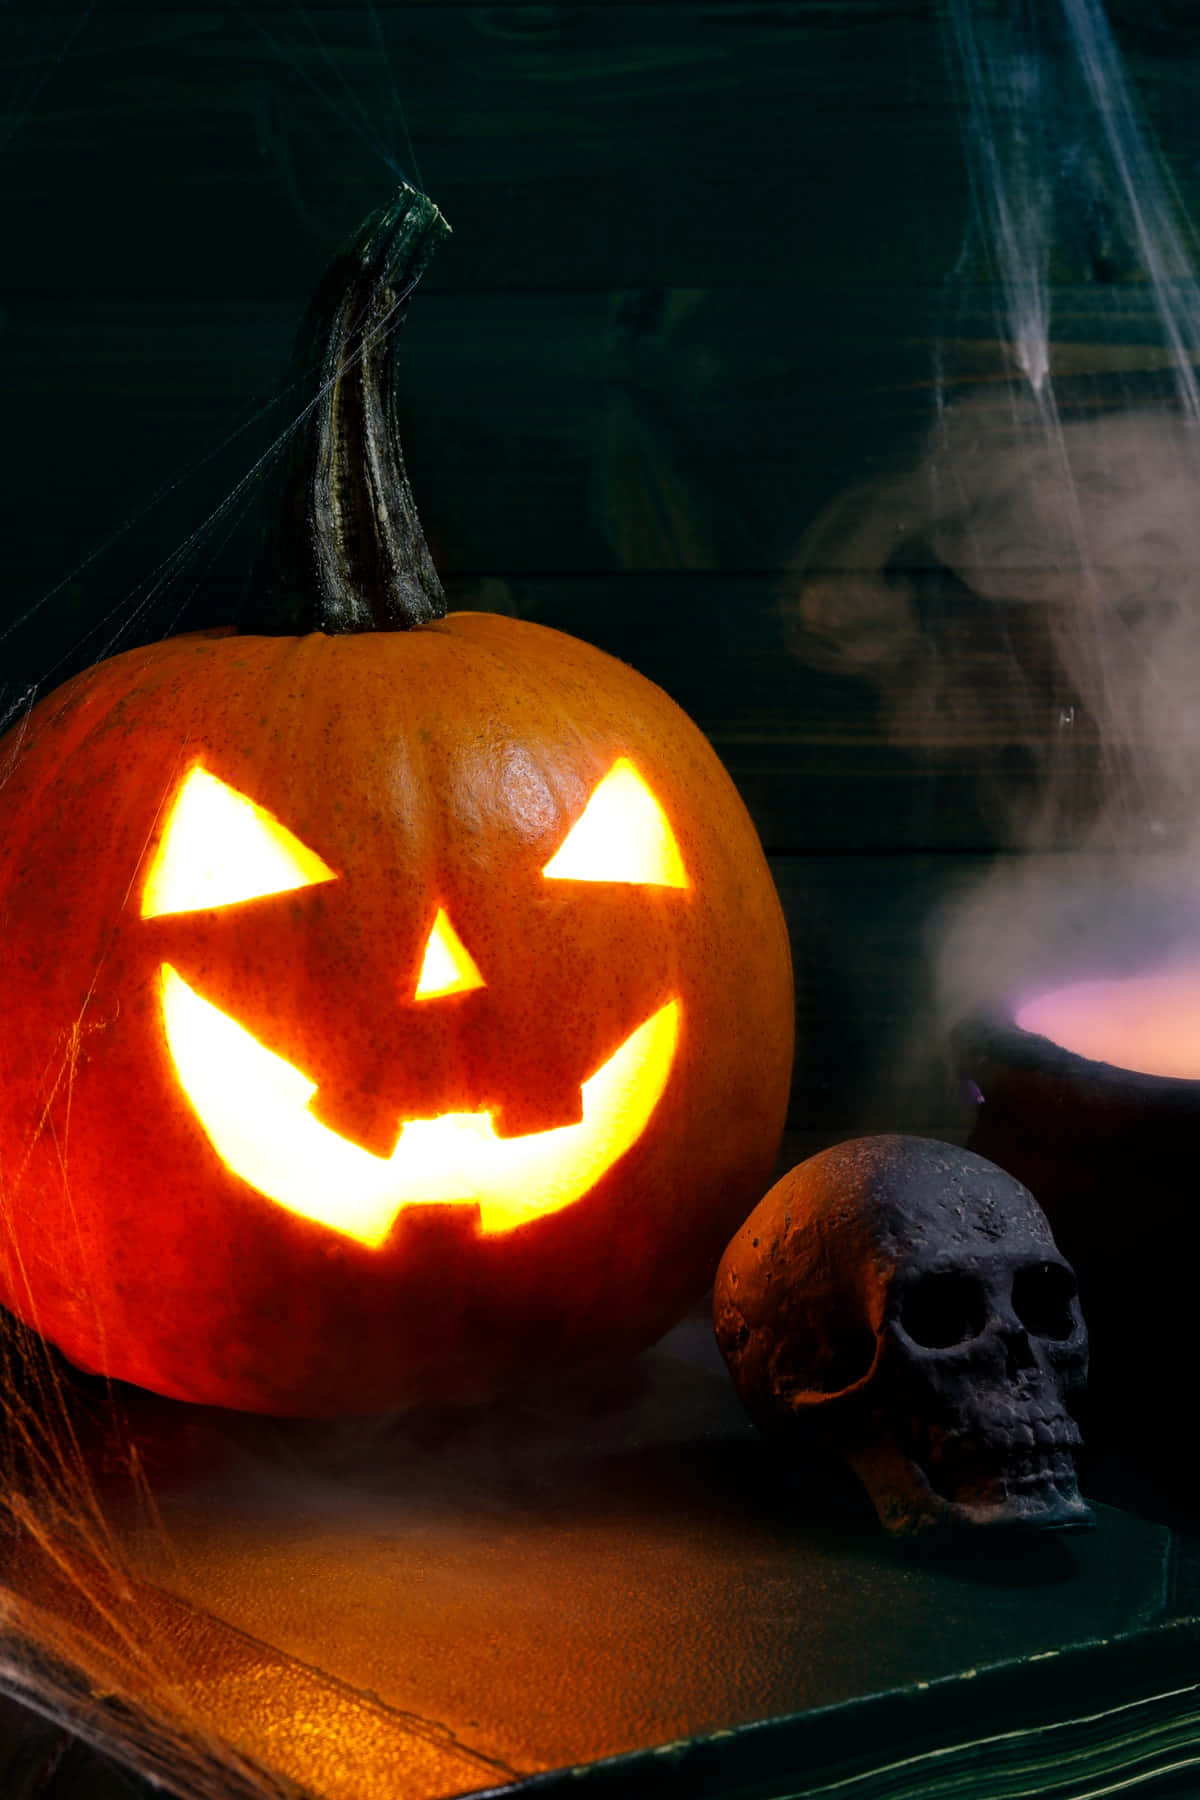 Kom ind i den spøgelsespagais stemning af Halloween med dette sjove profilbillede.